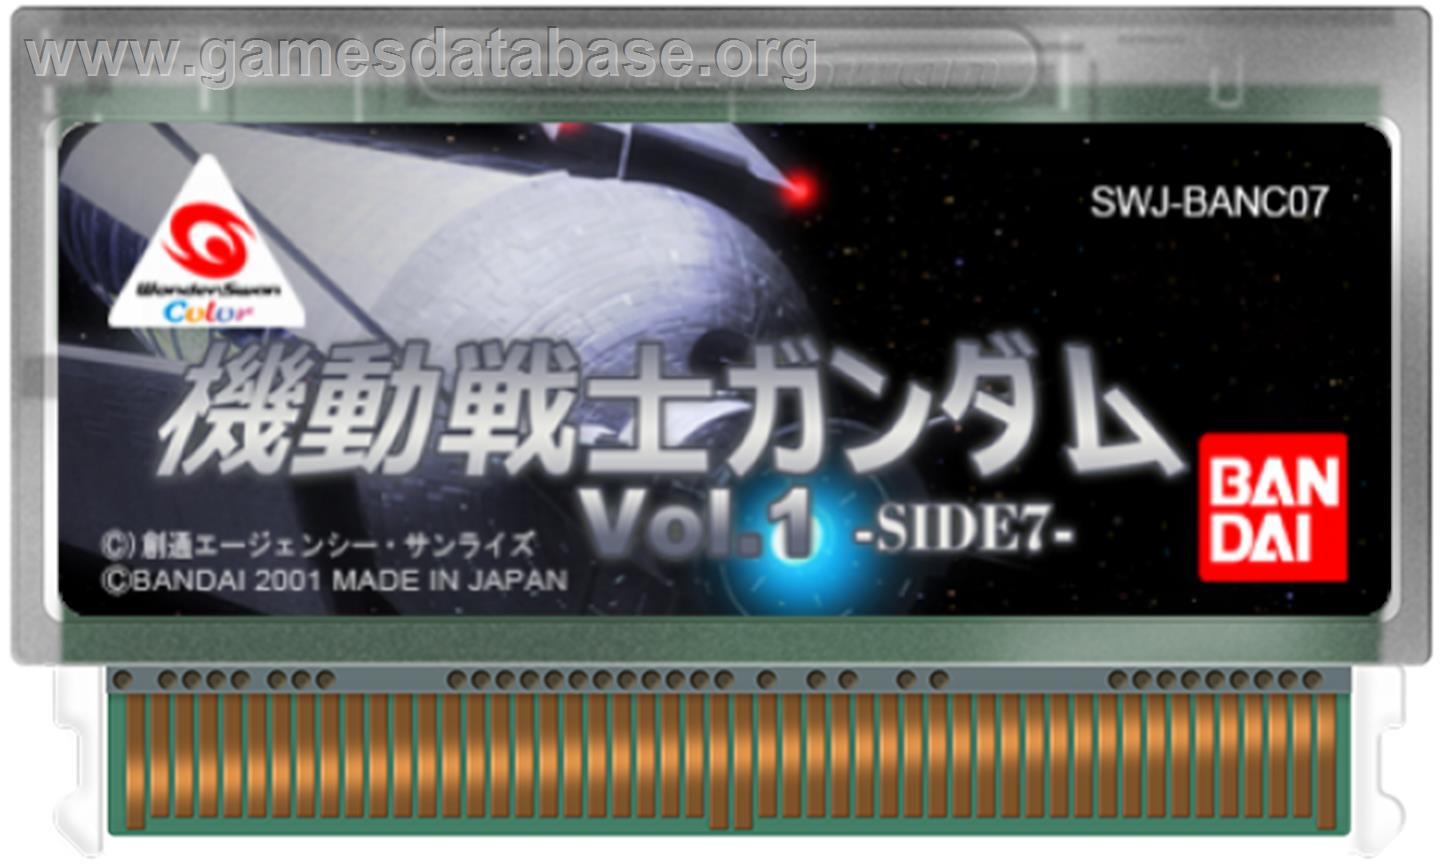 Mobile Suit Gundam: Vol. 1 - Side 7 - Bandai WonderSwan Color - Artwork - Cartridge